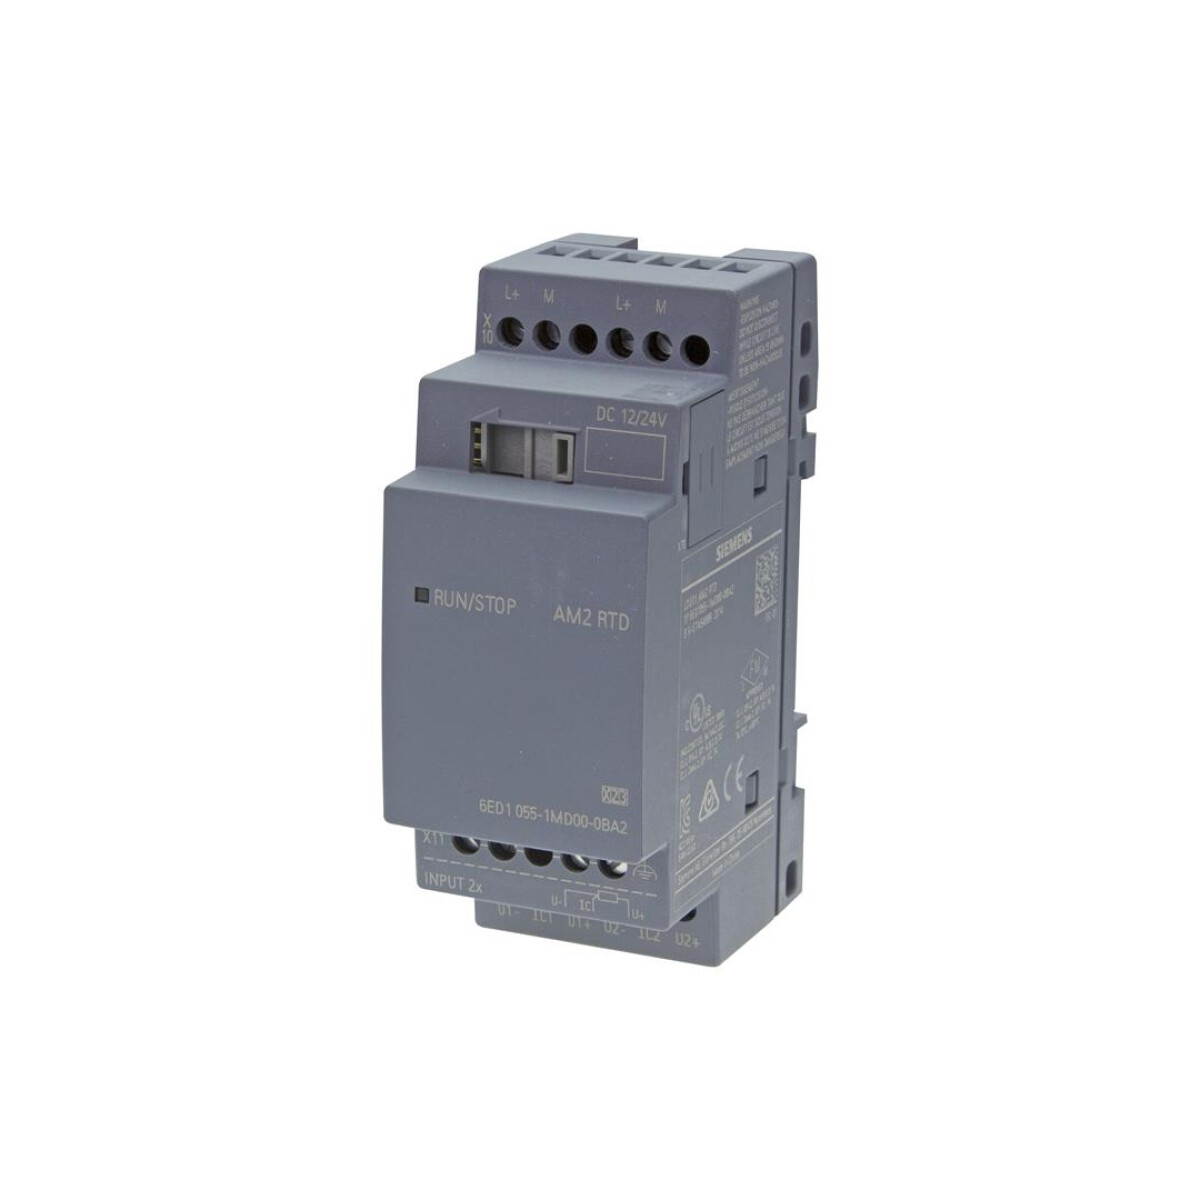 LOGO AM2 RTD modulo temperatura 2 EA -50 a 200ºC para PT100/PT1000 Siemens 